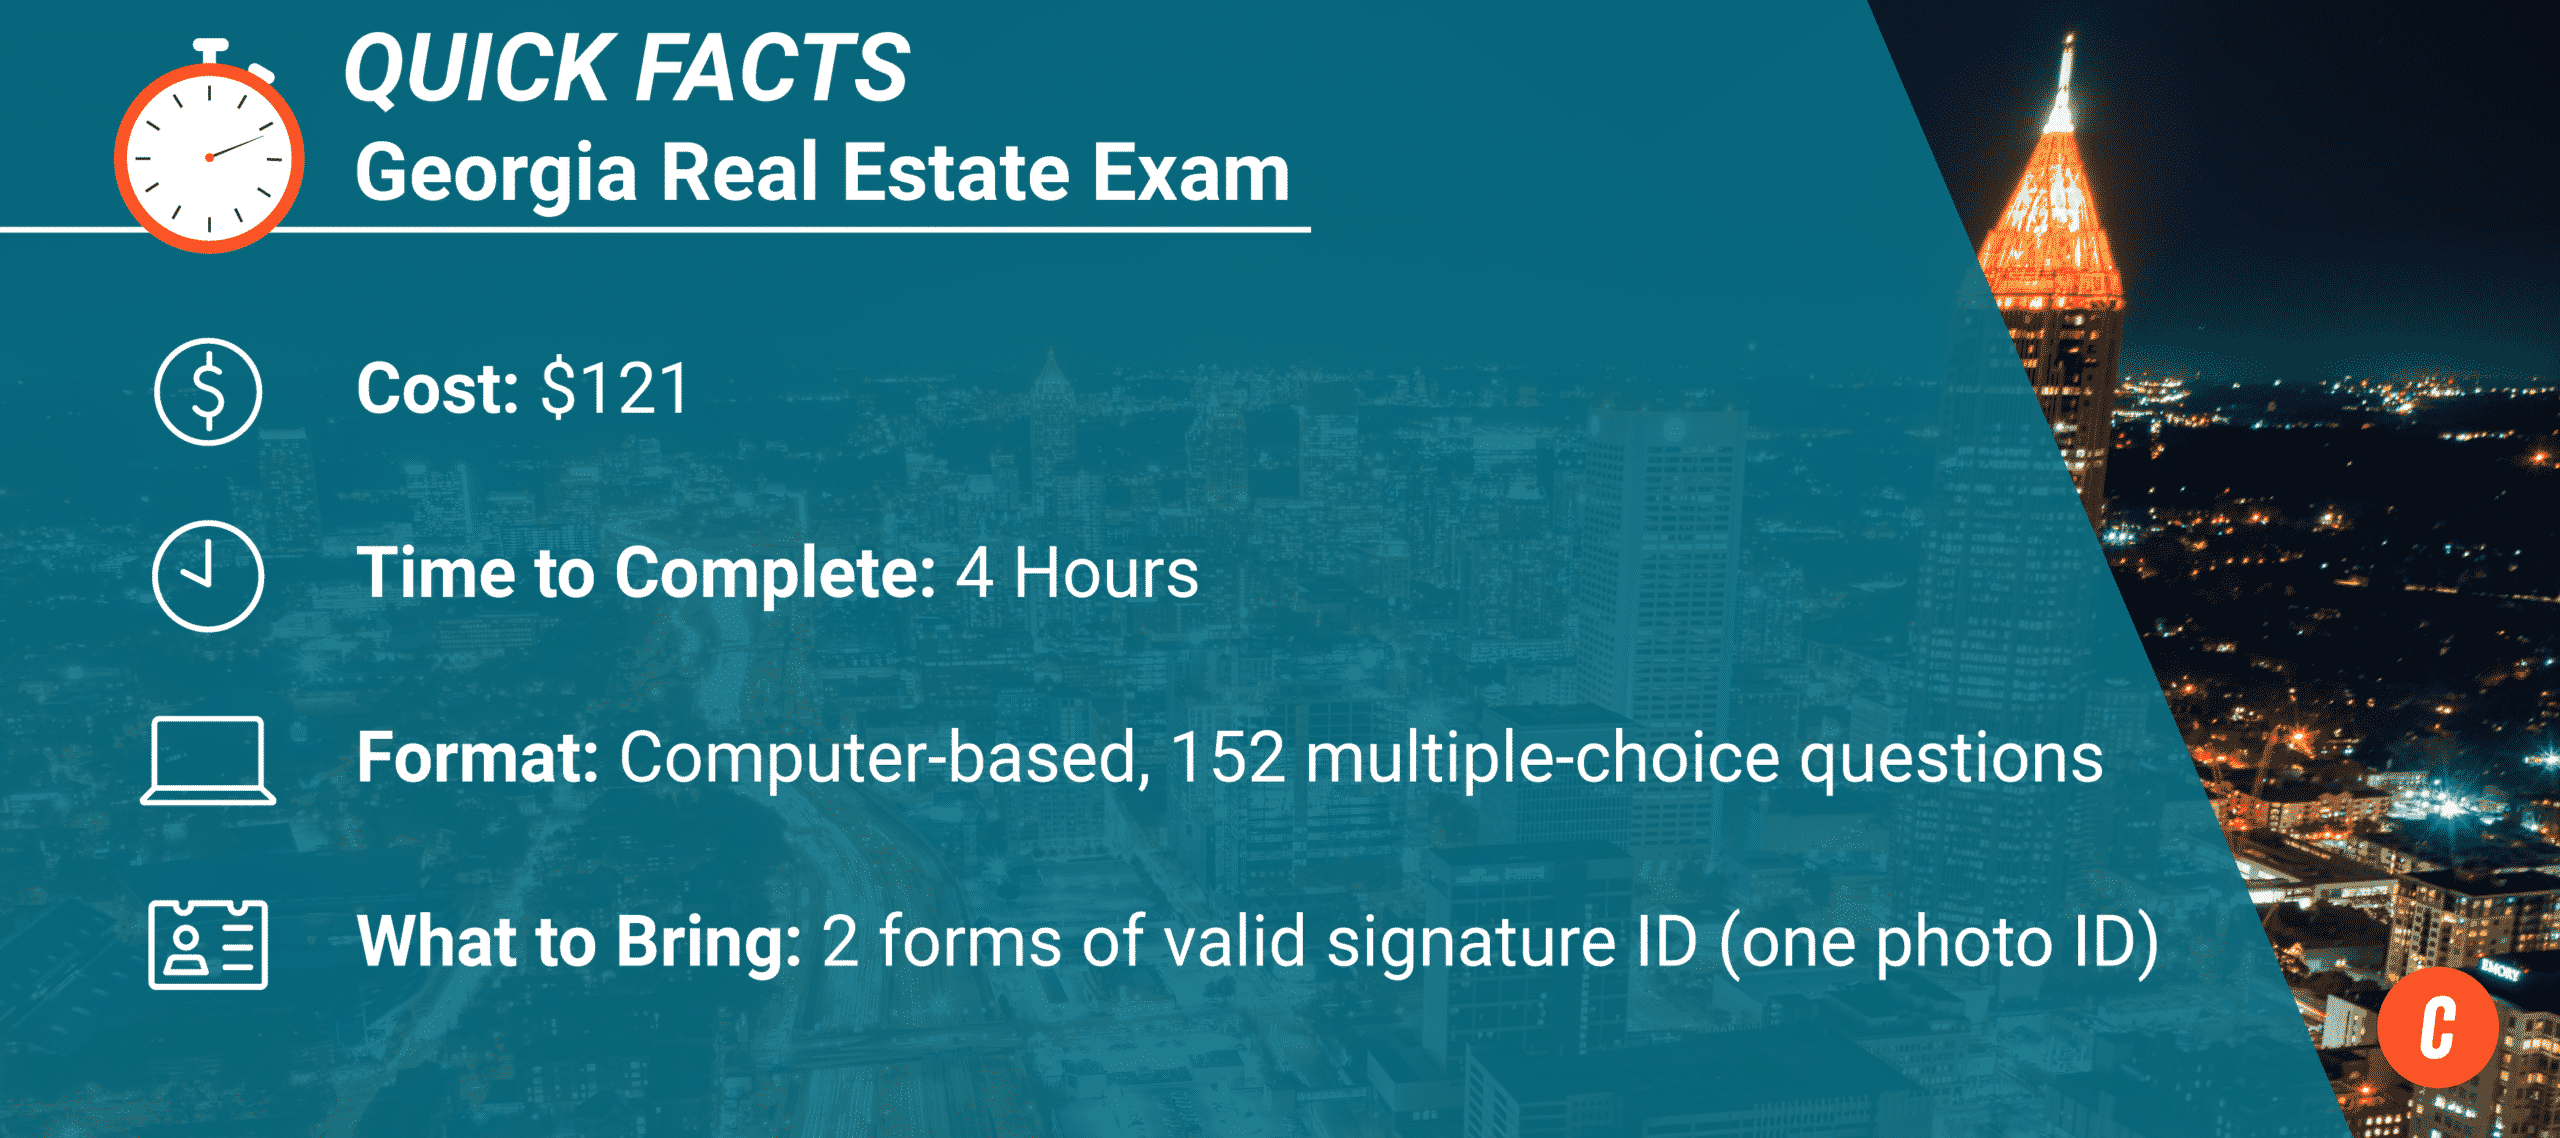 Infographic - Georgia Real Estate Exam - Quick Facts